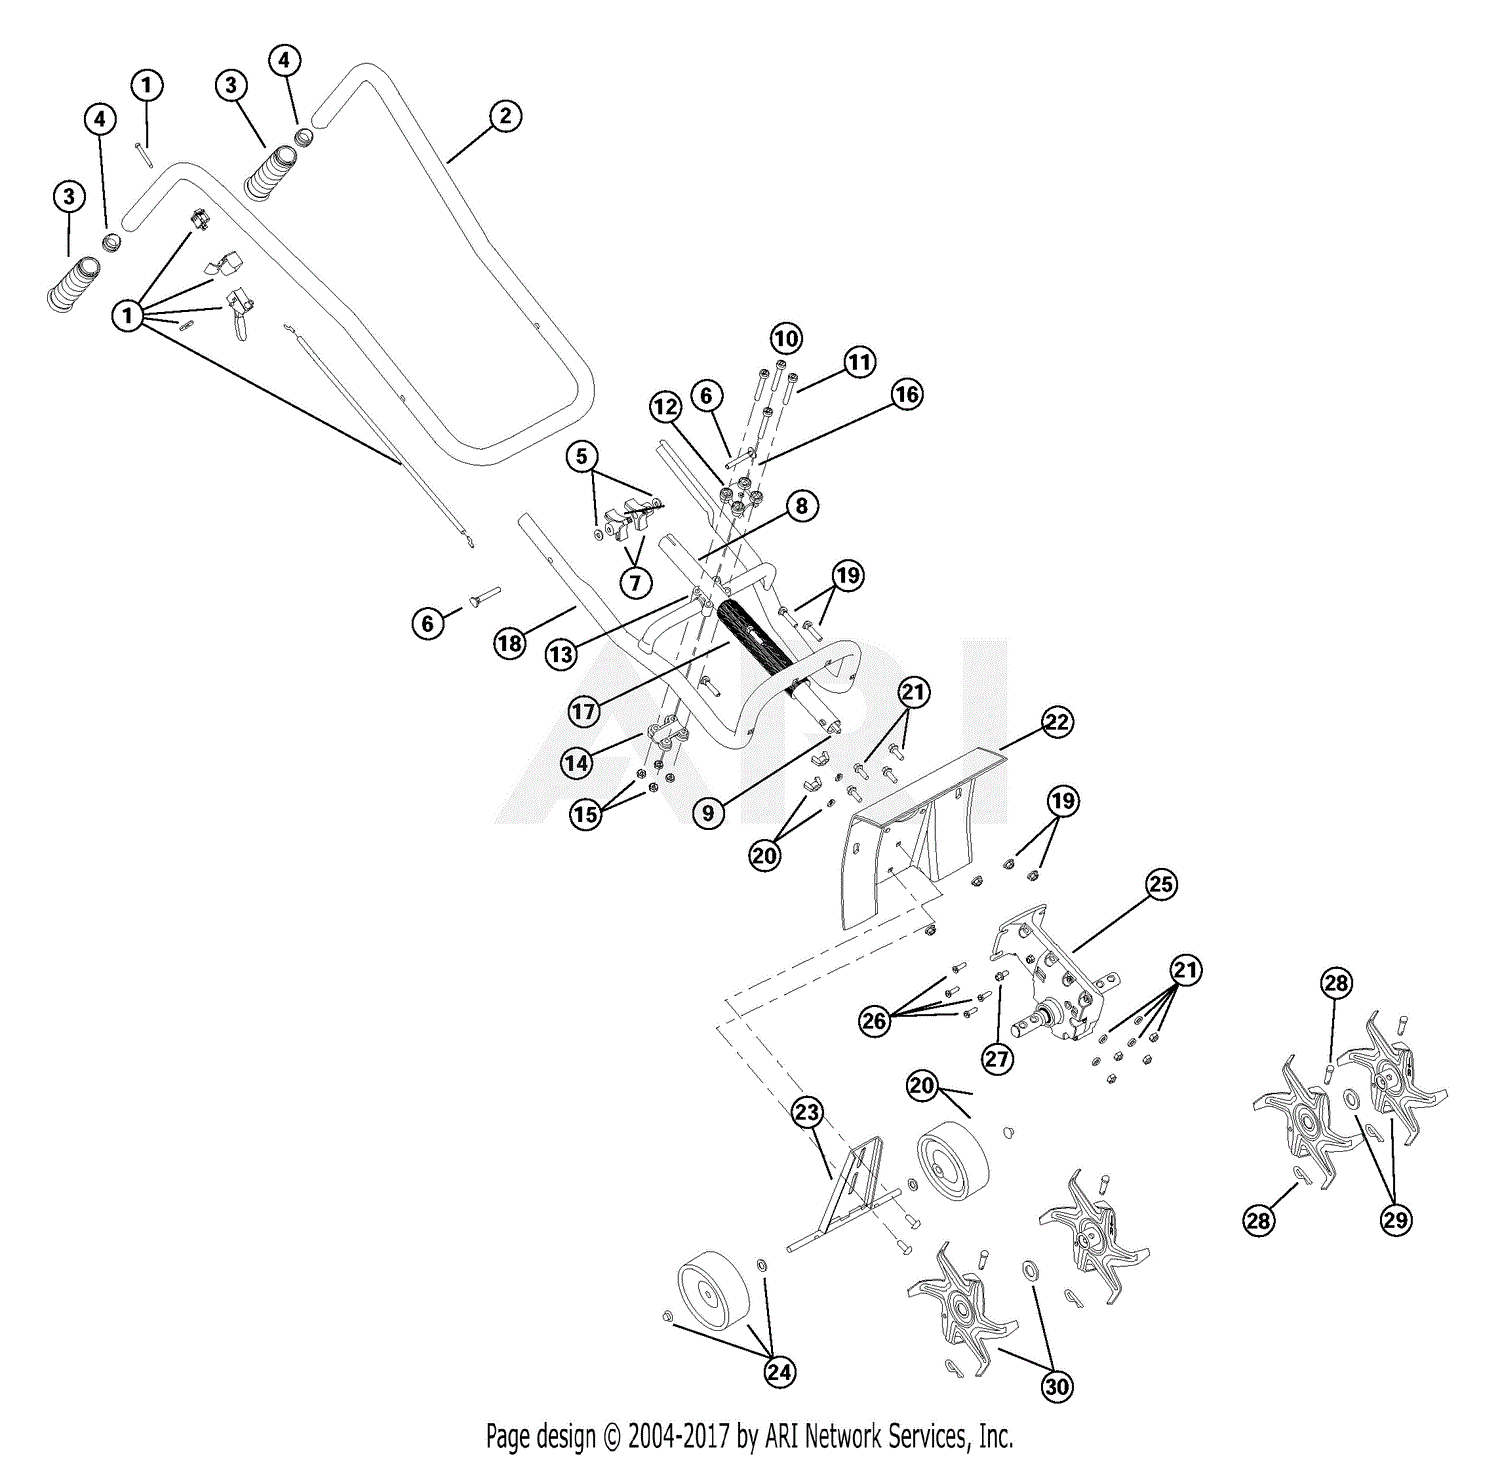 Bolens 31cc Tiller Fuel Line Diagram relay diagram